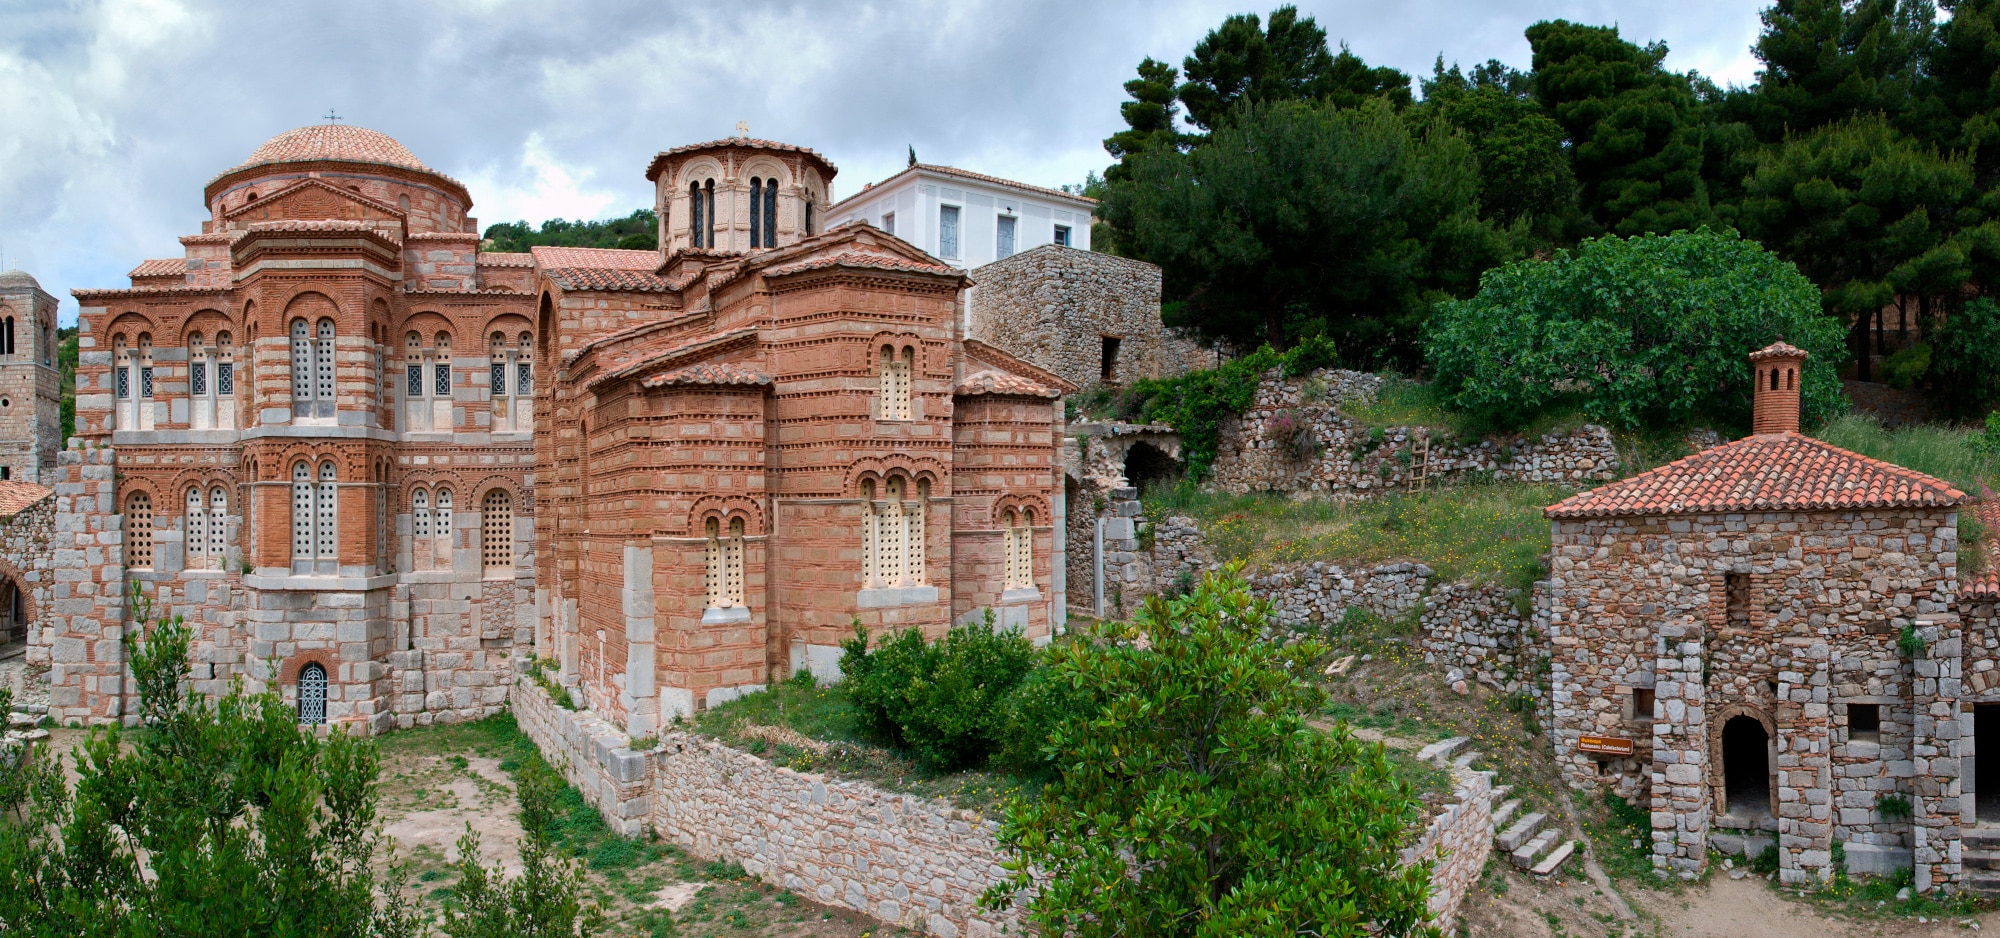 osios loukas moni 27 8 2023 1.jpg 1 - Μονή Οσίου Λουκά: Εγκρίθηκε η αποκατάσταση μετά την φωτιά στη Βοιωτία - Το καλύτερα διατηρημένο μοναστηριακό συγκρότημα της μεσοβυζαντινής περιόδου (εικόνες)